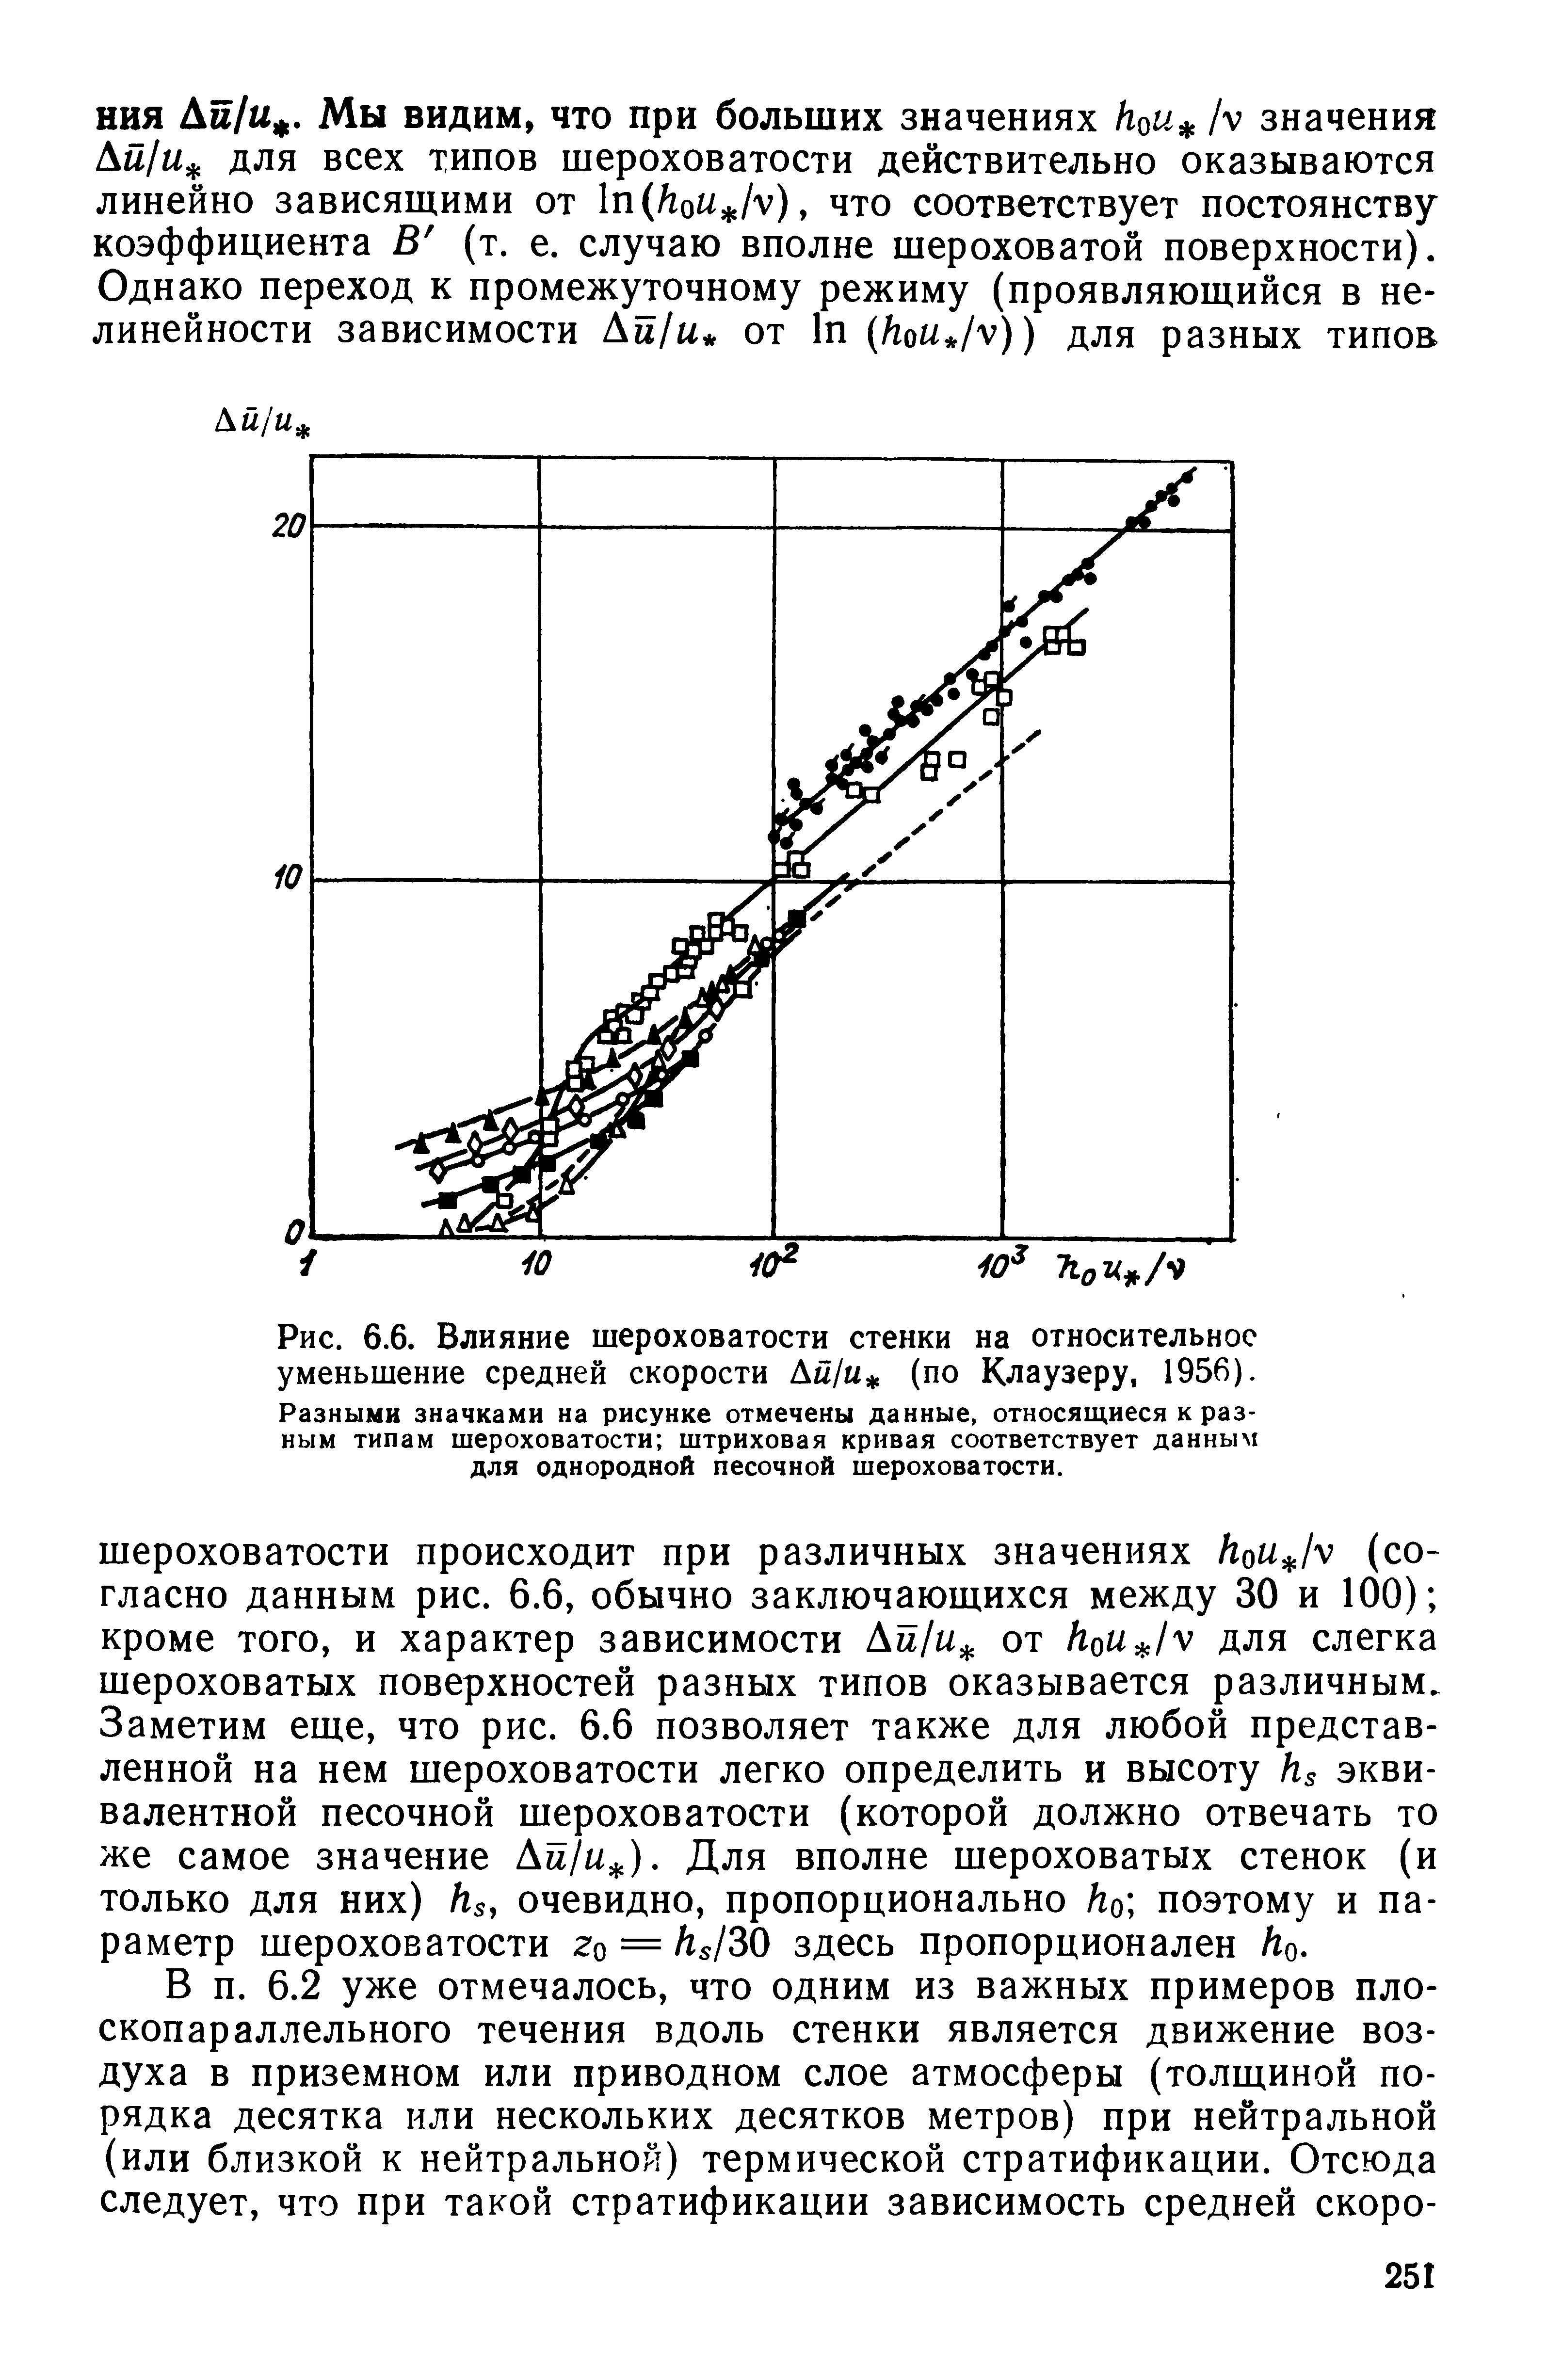 Рис. 6.6. Влияние шероховатости стенки на относительное уменьшение средней скорости Ам/м (по Клаузеру, 1956).
